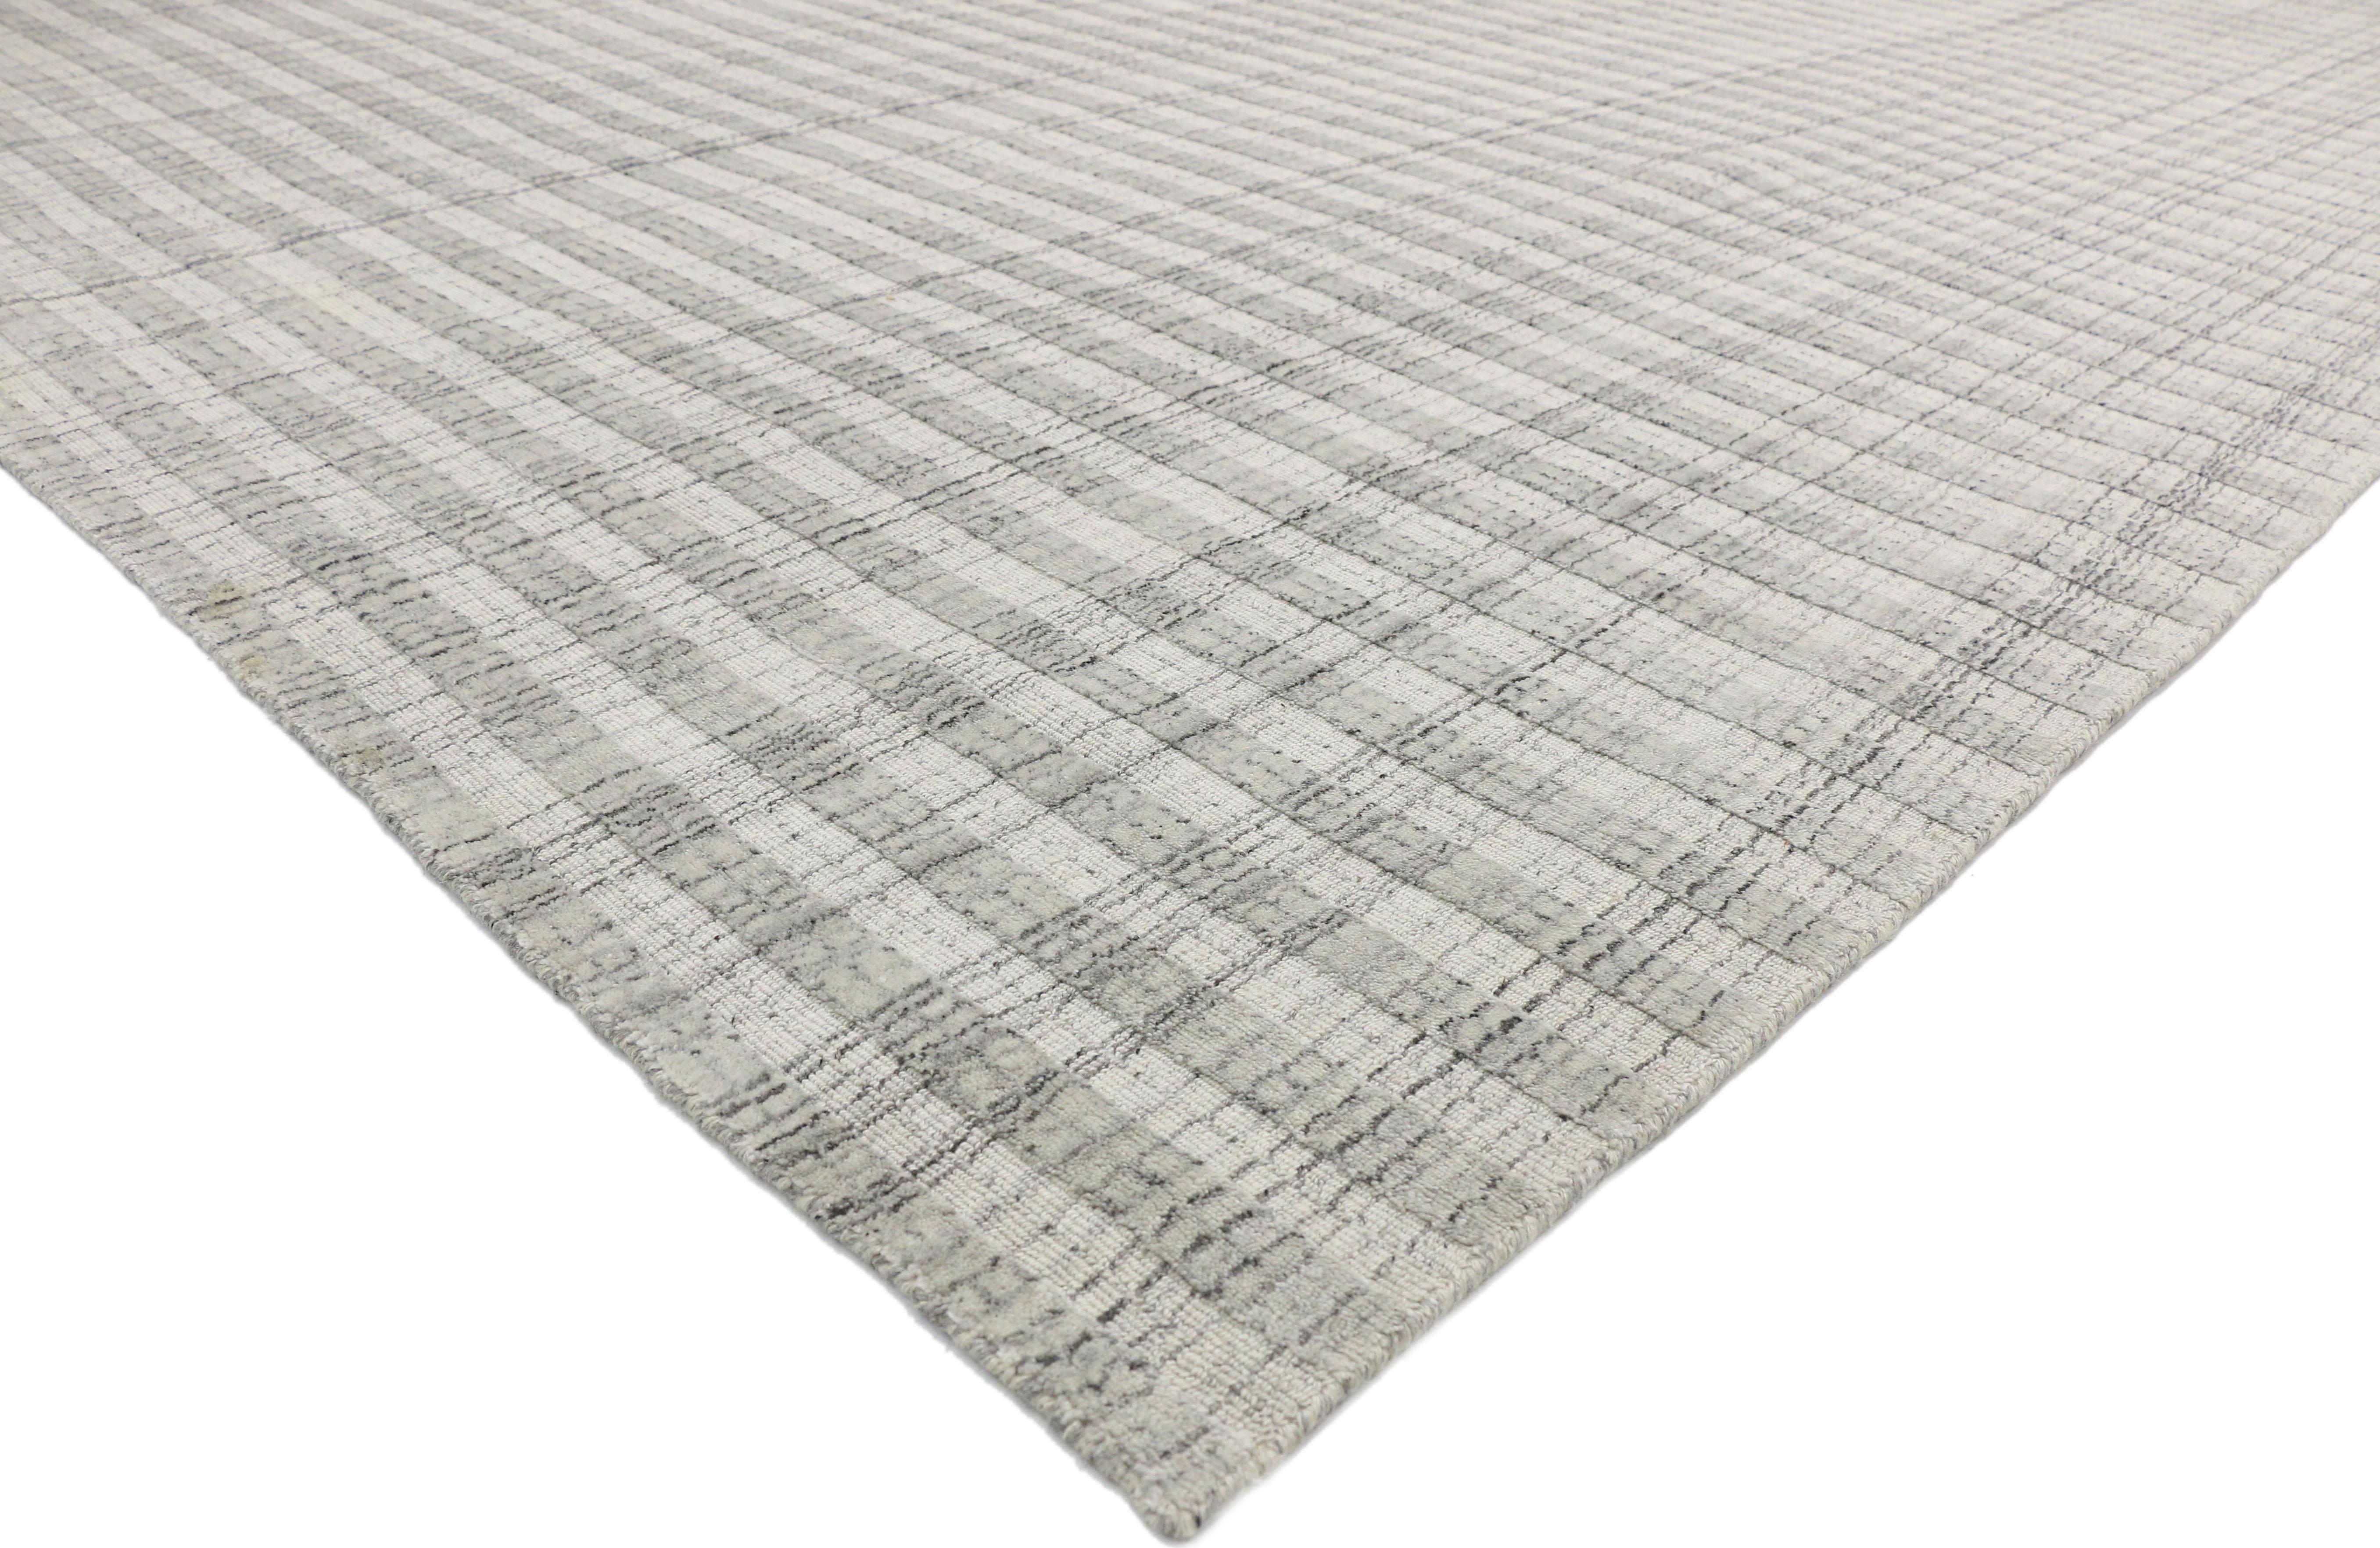 30442, grauer Übergangsteppich im schwedisch-gustavianischen Stil, Textur-Teppich. Elegante Schlichtheit trifft auf provenzalischen Schick in diesem wunderschönen grauen Teppich im schwedisch-gustavianischen Stil. Dieser ruhige und komfortable